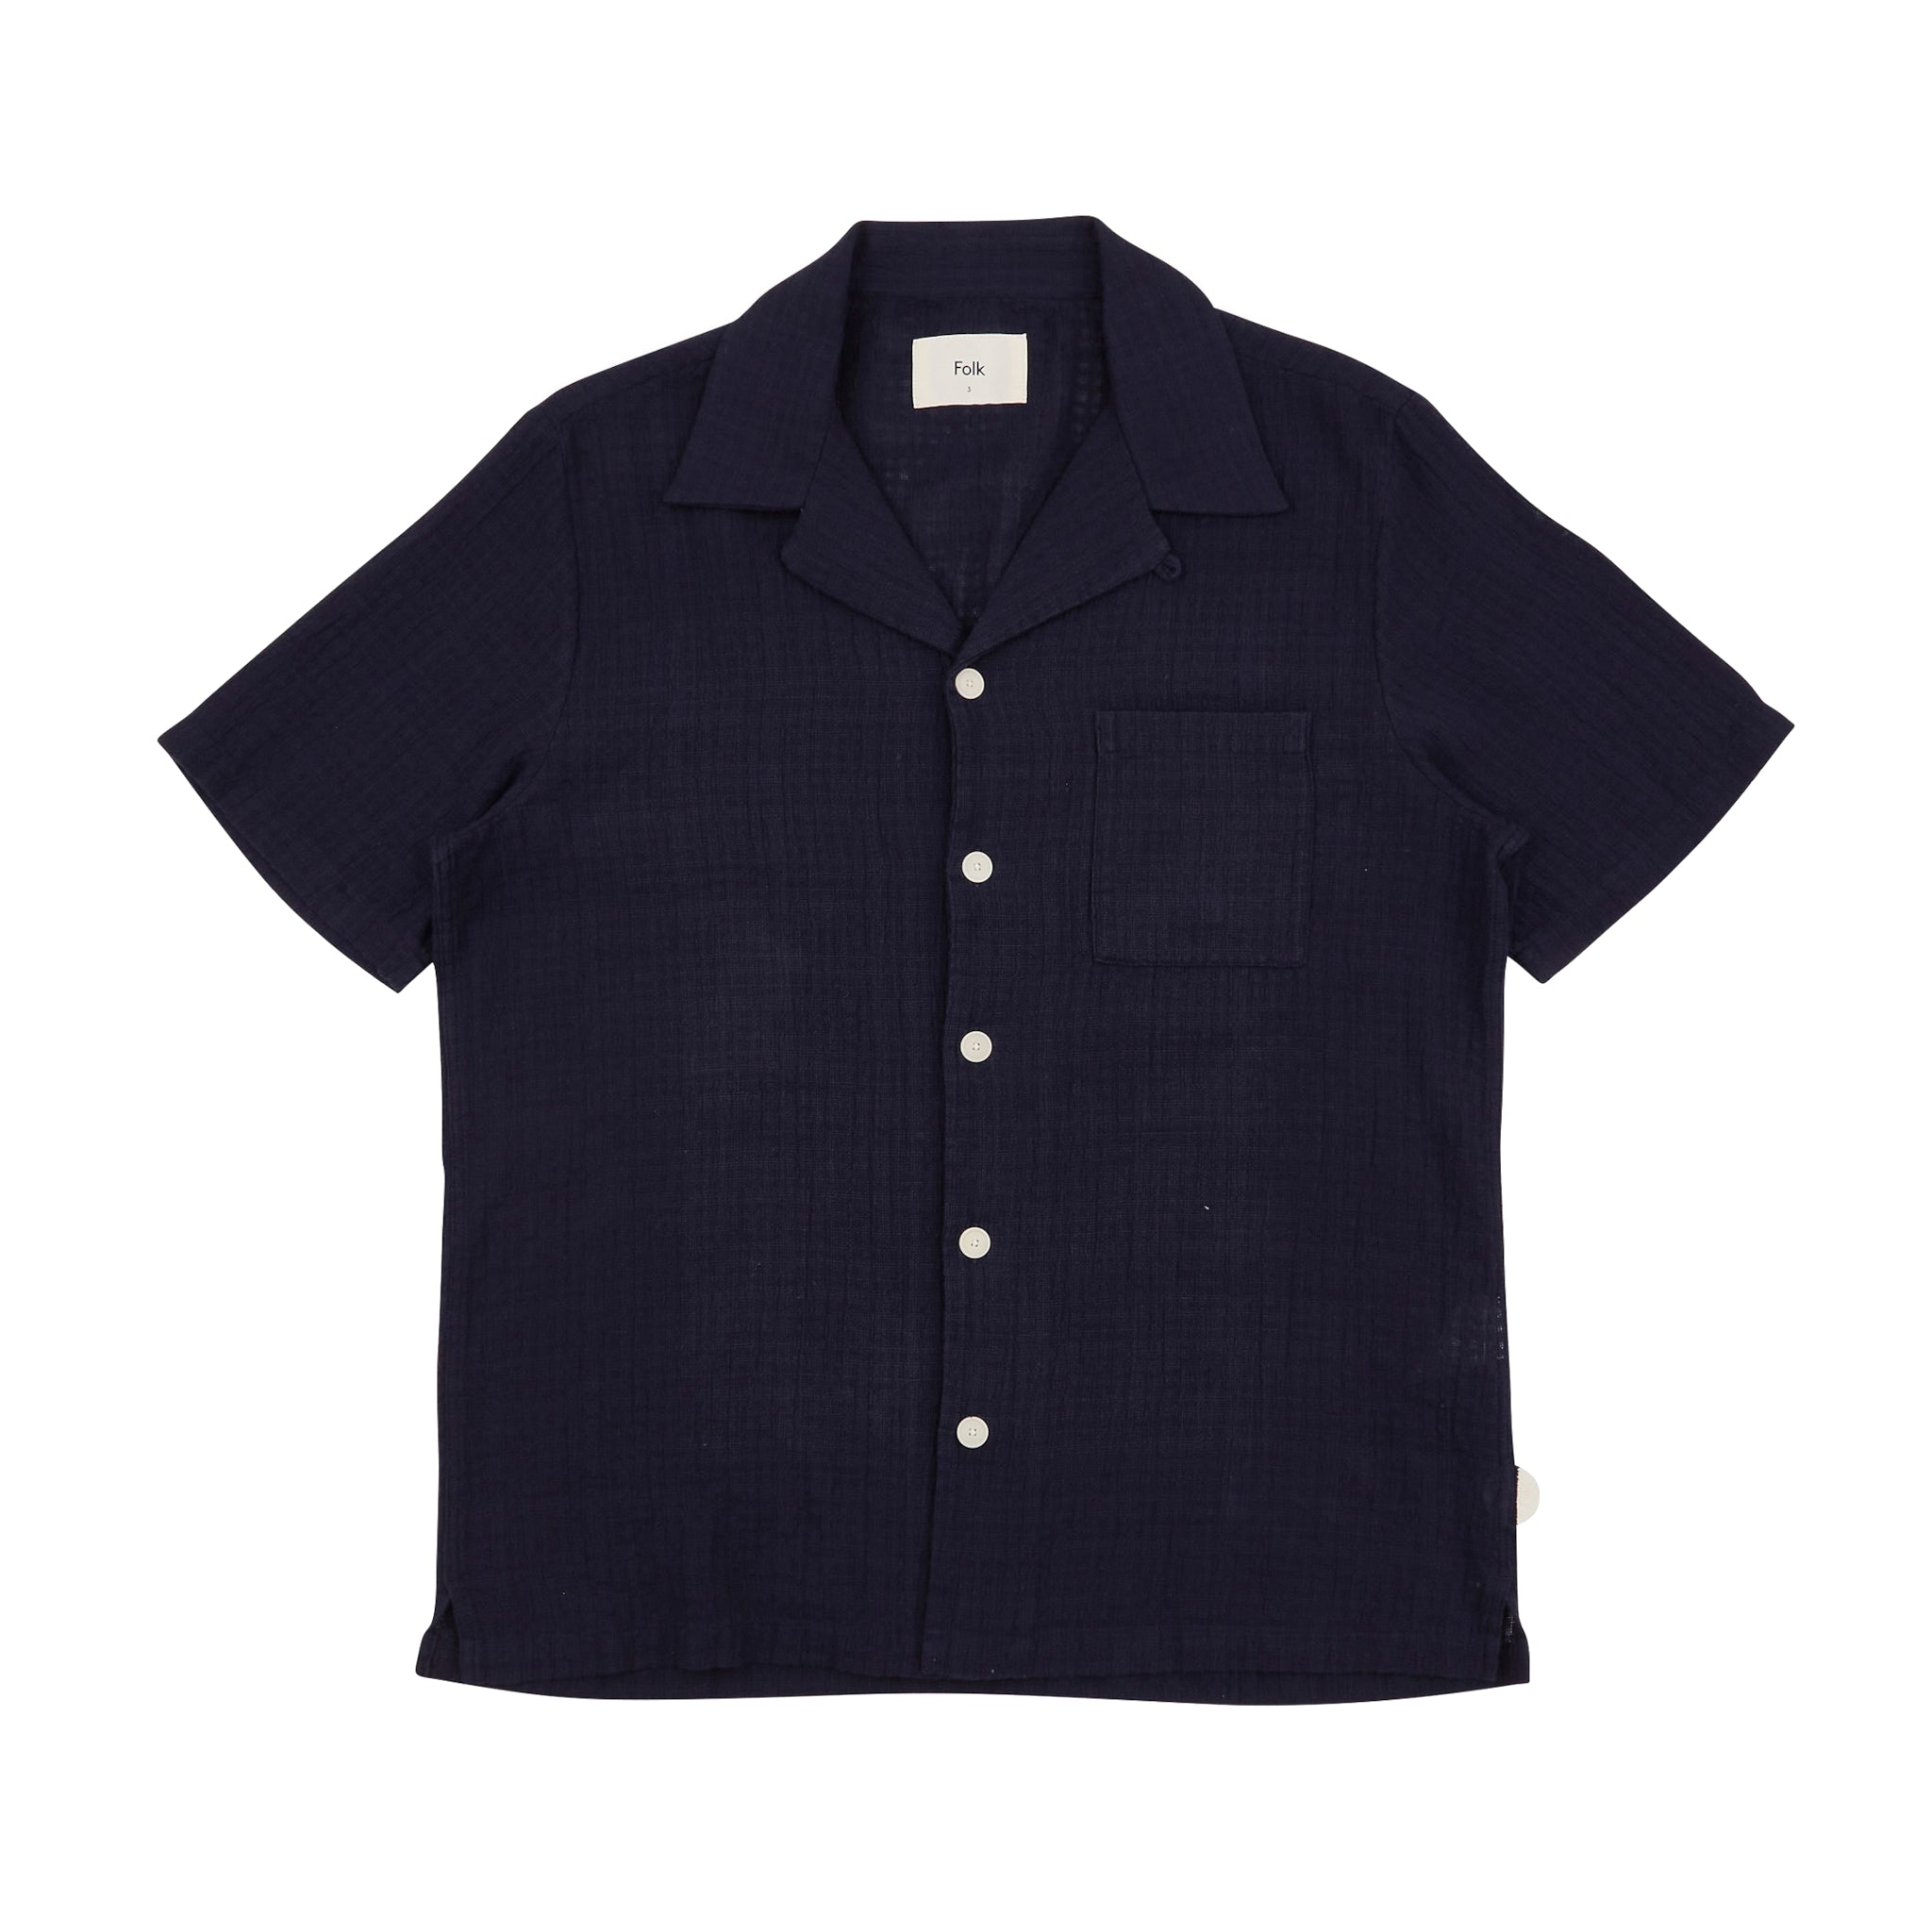 SS Soft Collar Shirt - Navy Open Weave Check-Folk-W2 Store